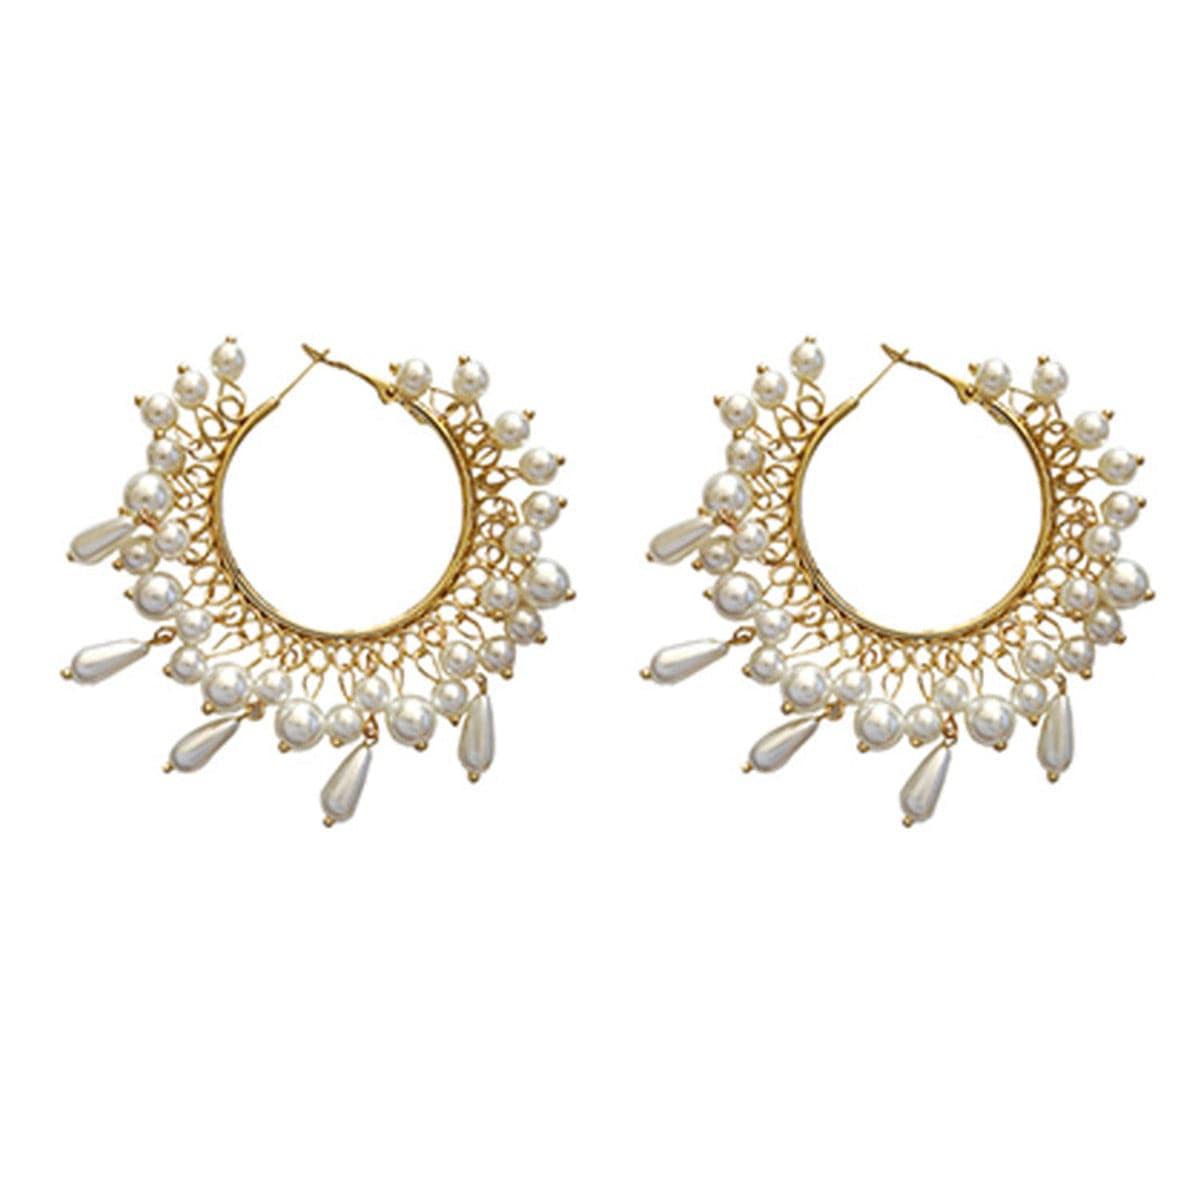 Pearl Group & 18K Gold-Plated Hoop Earrings